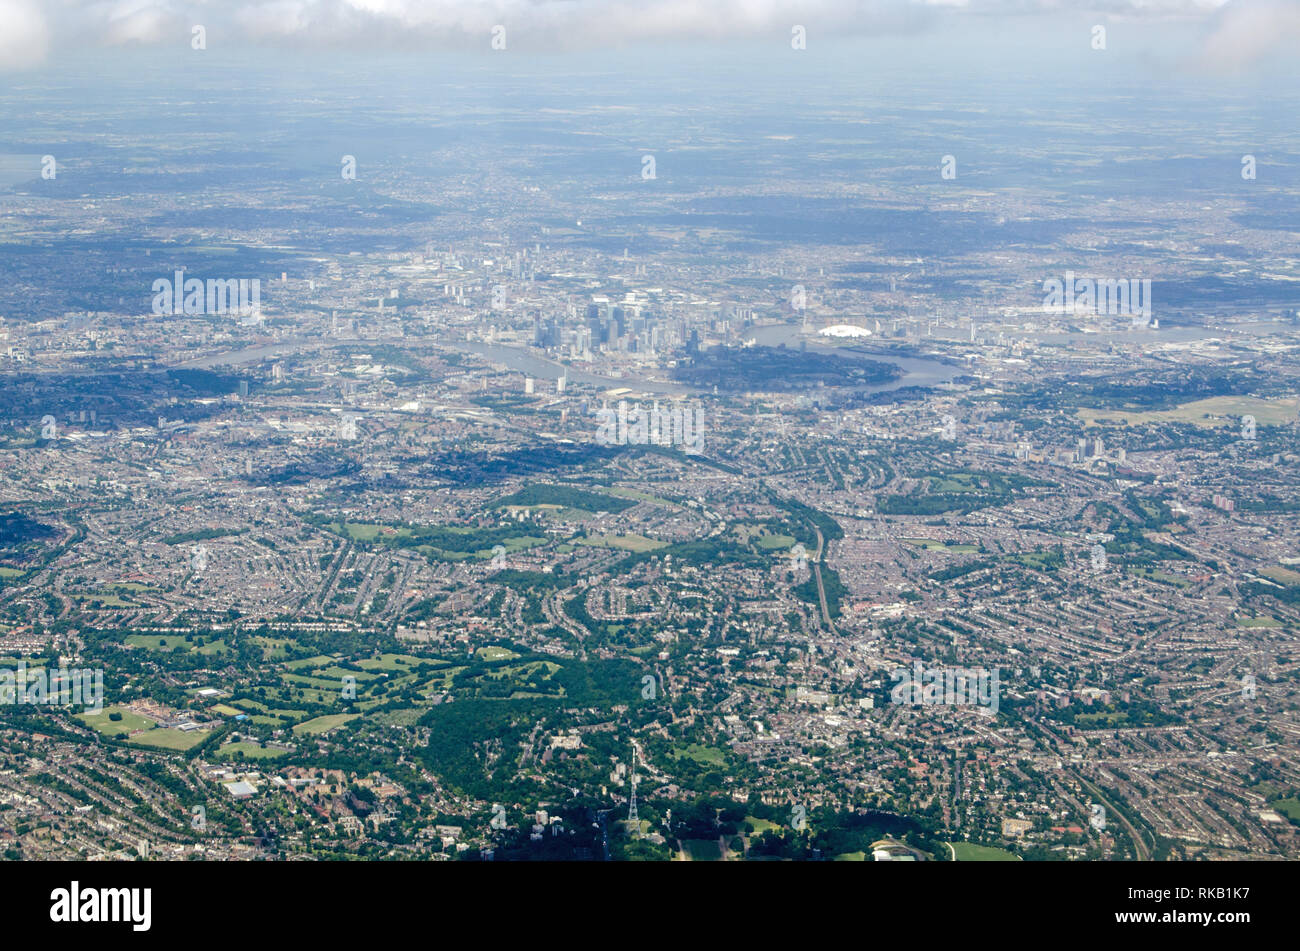 Vue aérienne à travers le sud-est de Londres à Crystal Palace en bas de l'image, Dulwich College en bas à gauche et les gratte-ciel de l'Hôtellerie Banque D'Images